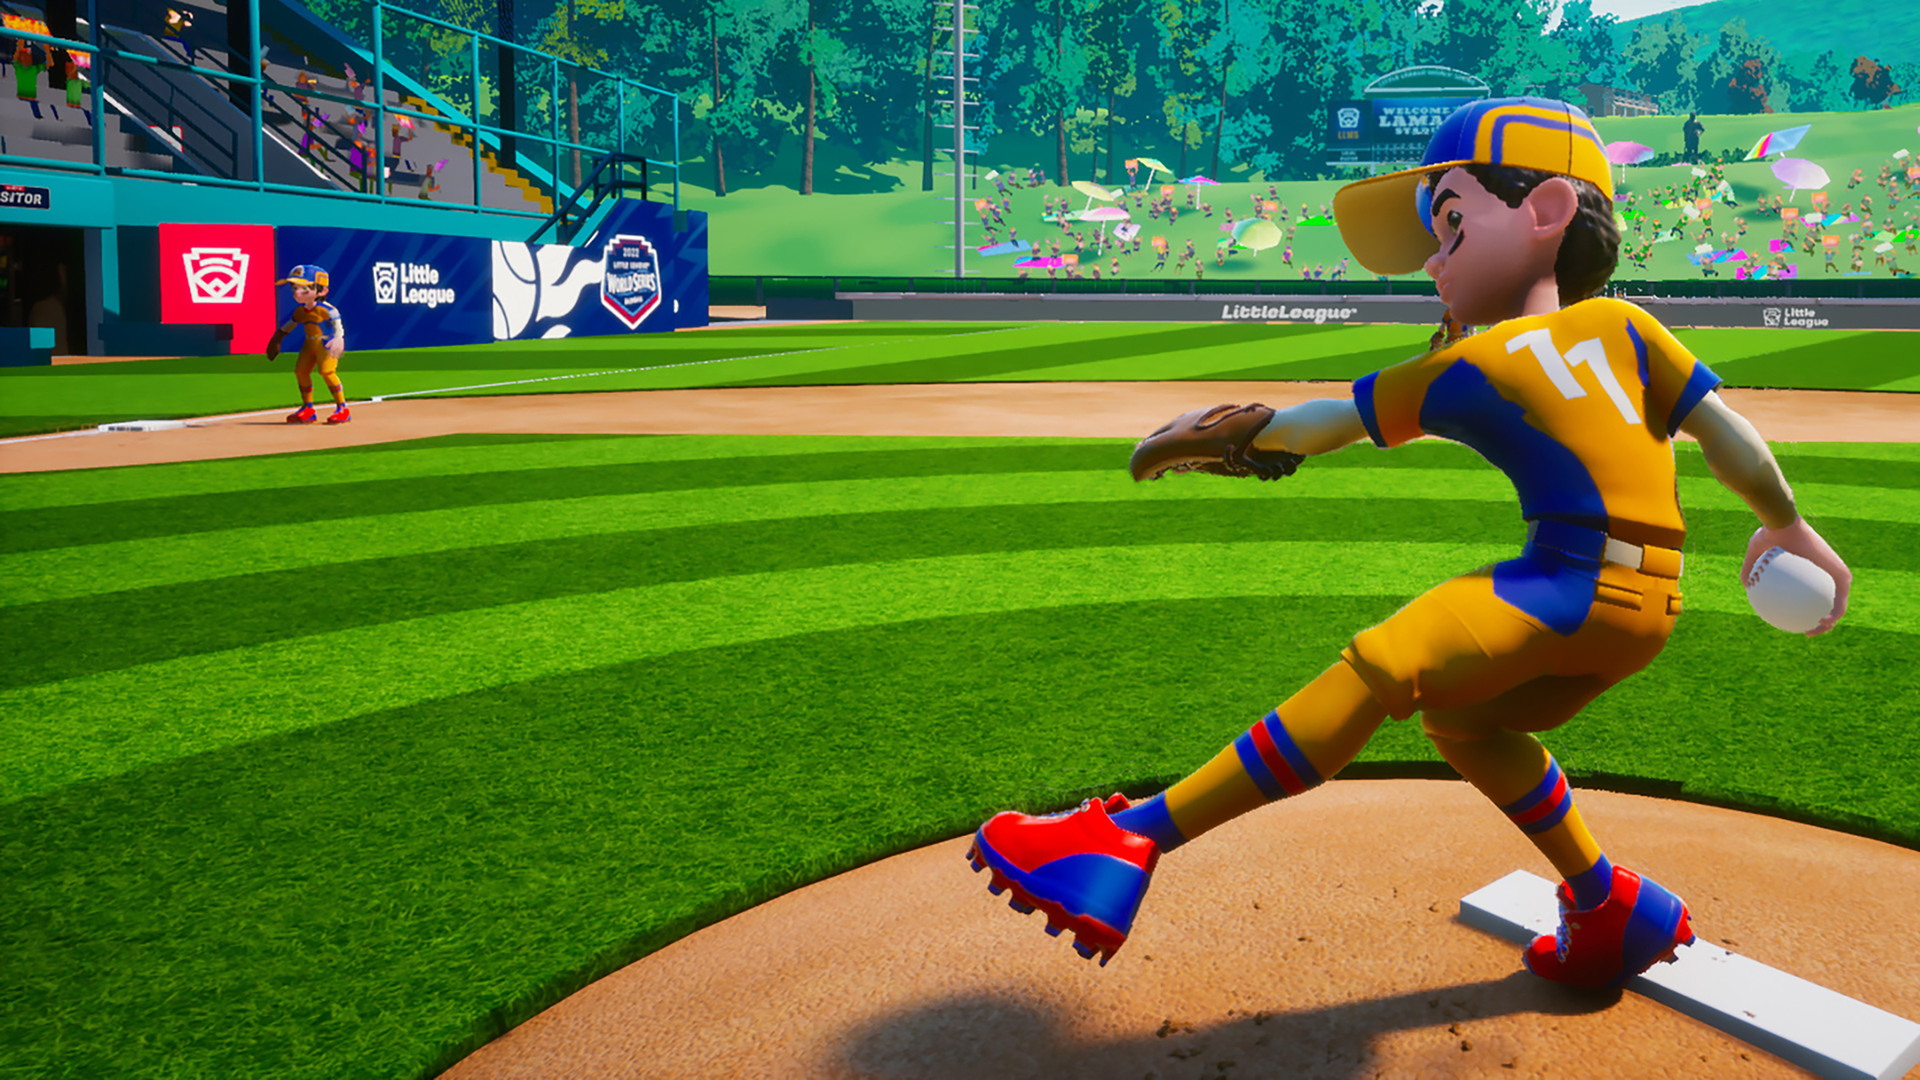 Little League World Series Baseball 2022 - screenshot 2